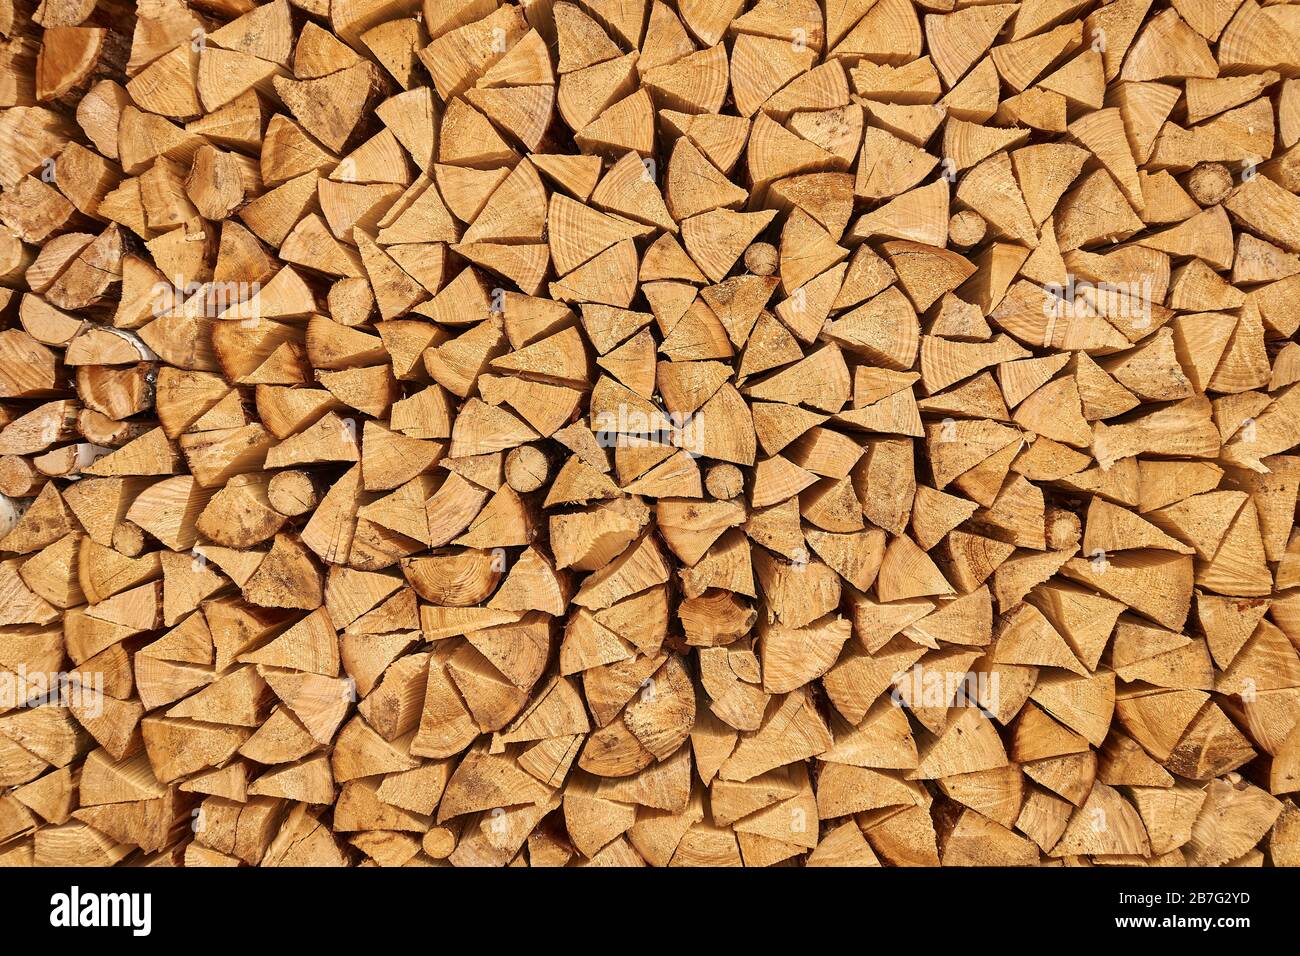 Hintergrundbild von gestapelten, trocken gehackten Holzstämmen, die für Brennholz verwendet werden. Stapel von Holzstämmen, die im Kamin verwendet werden können. Alternative Erwärmungsmethode. Stockfoto